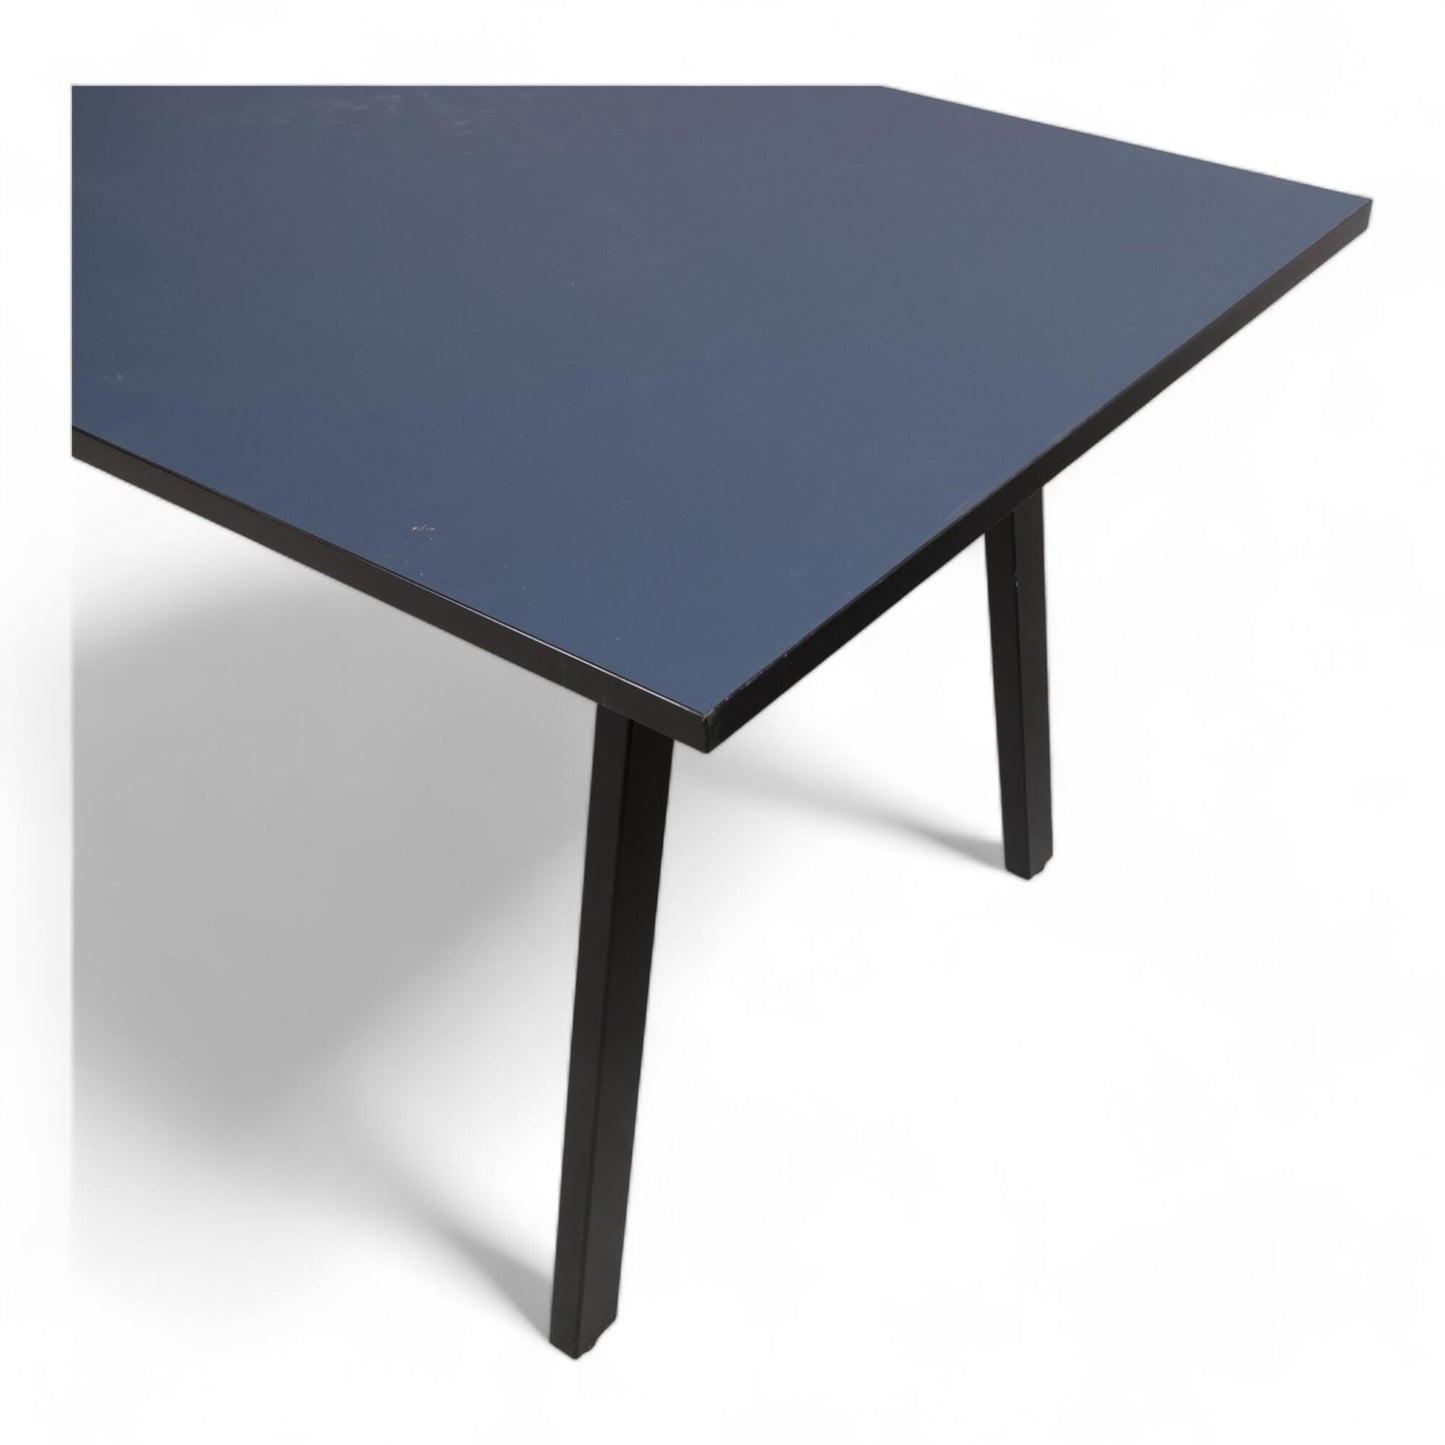 Nyrenset | Fora Form kvart møterombord i blått og sort 180x80cm